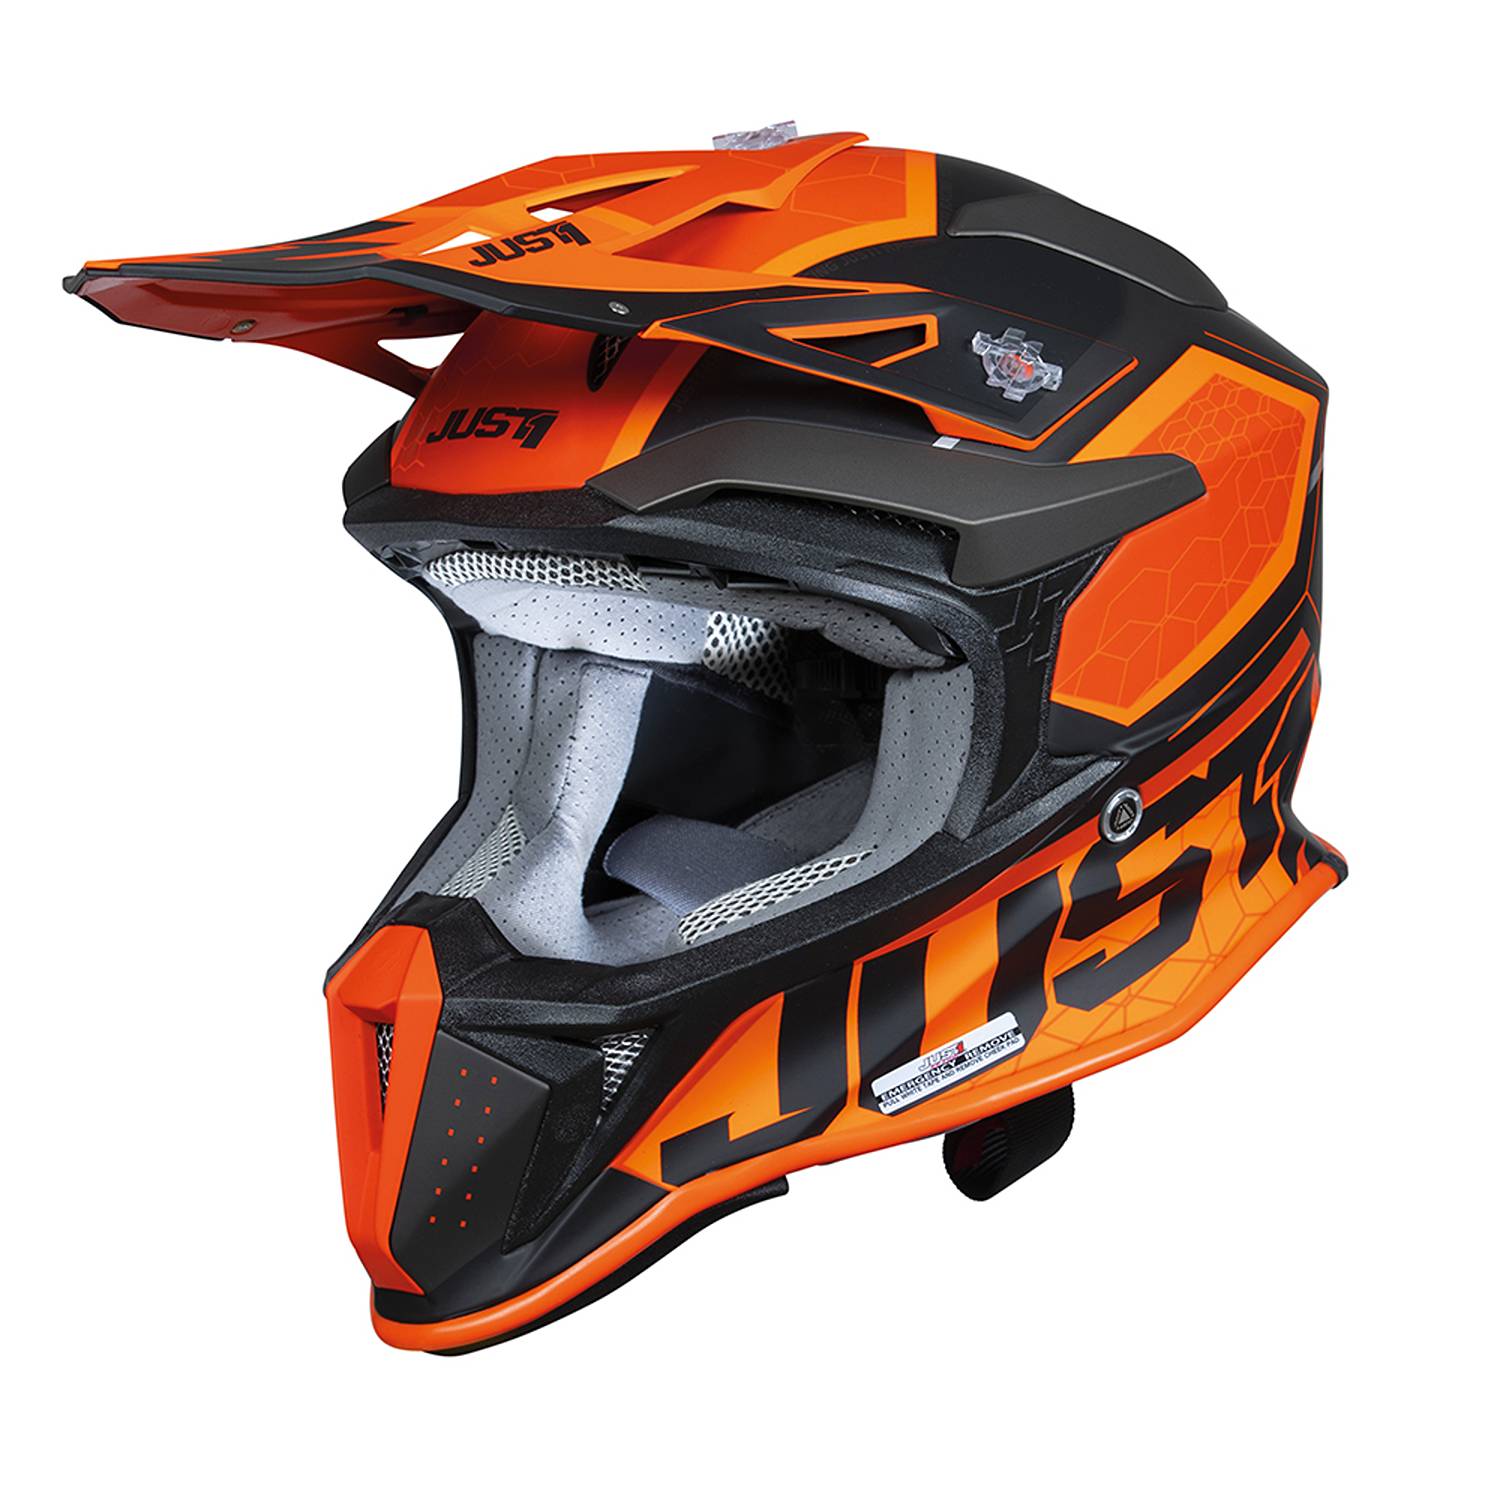 Image of Just1 J18-F Hexa Orange Black Matt Offroad Helmet Size L EN